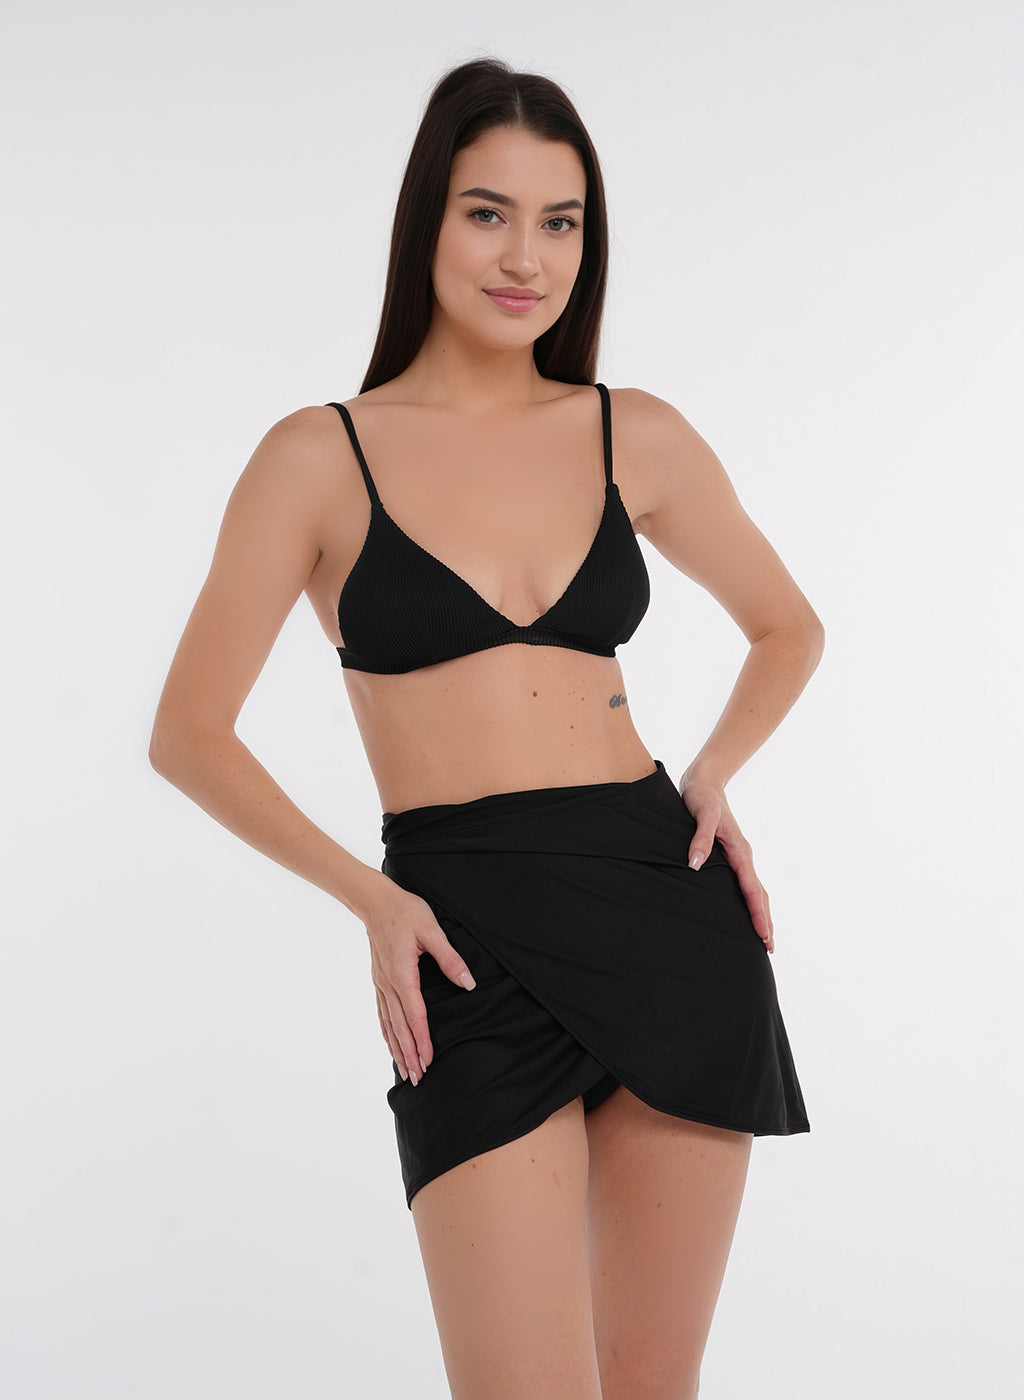 Over Swimsuit Wrap Skirt - Black